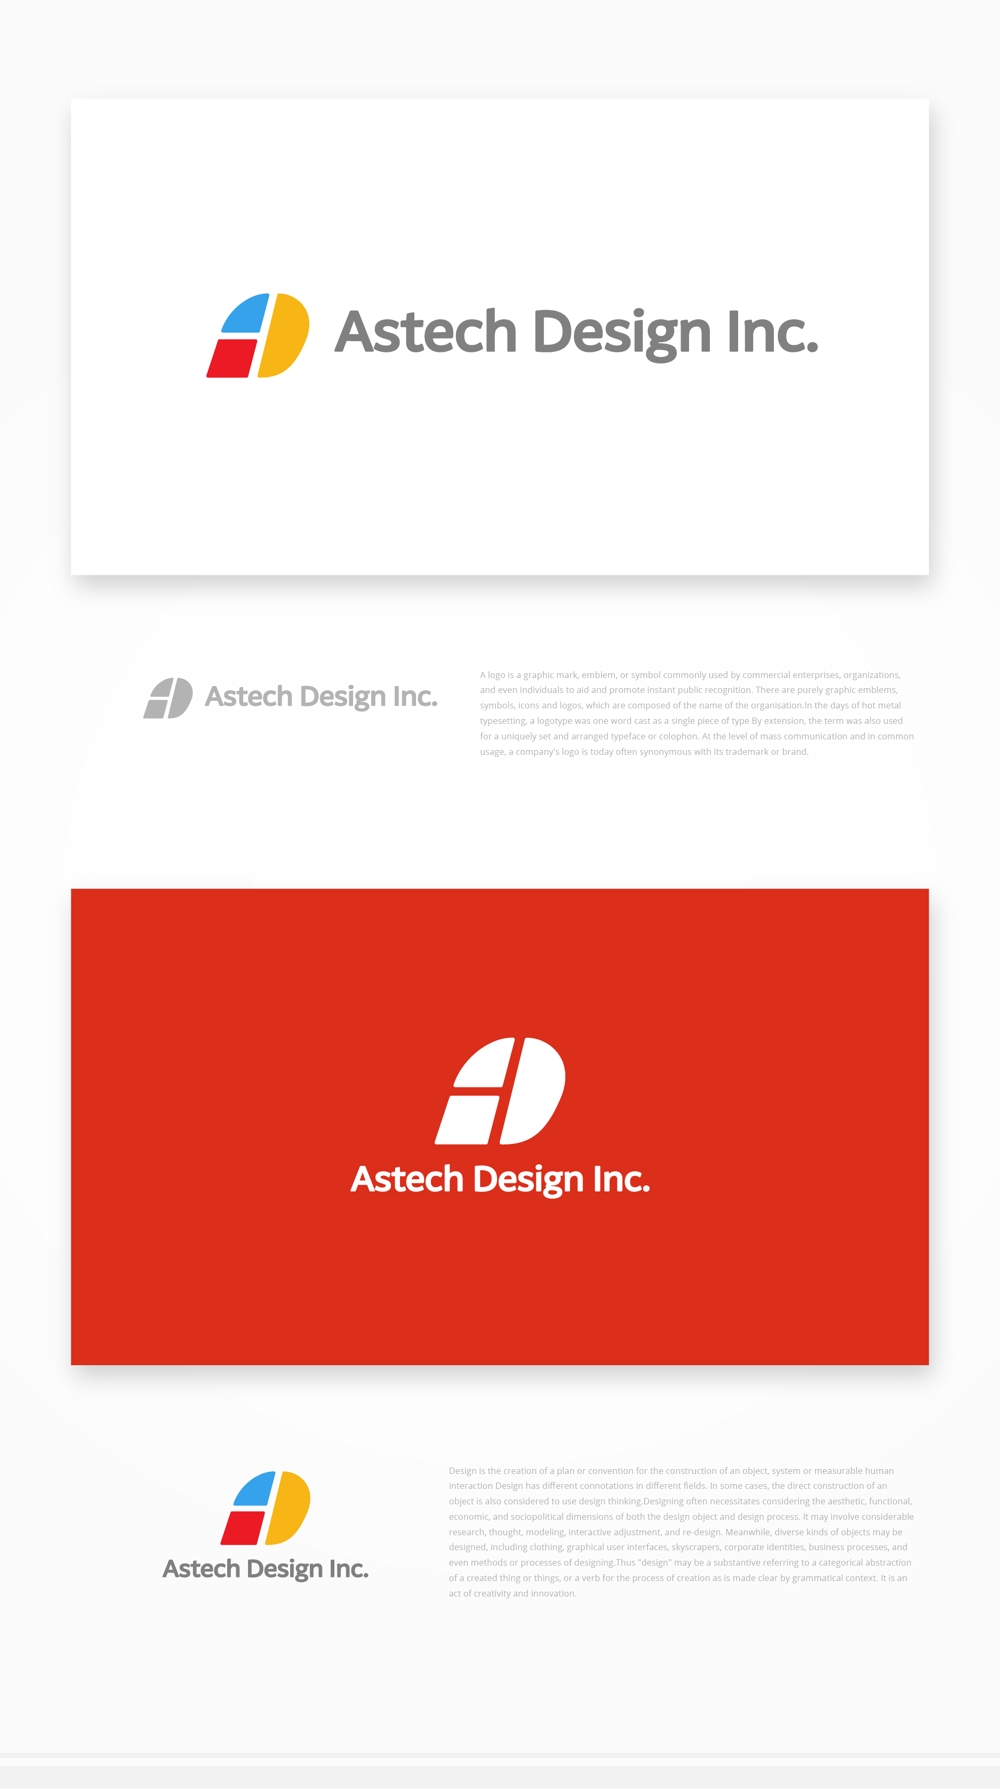 床施工会社「Astech Design Inc.」のロゴ